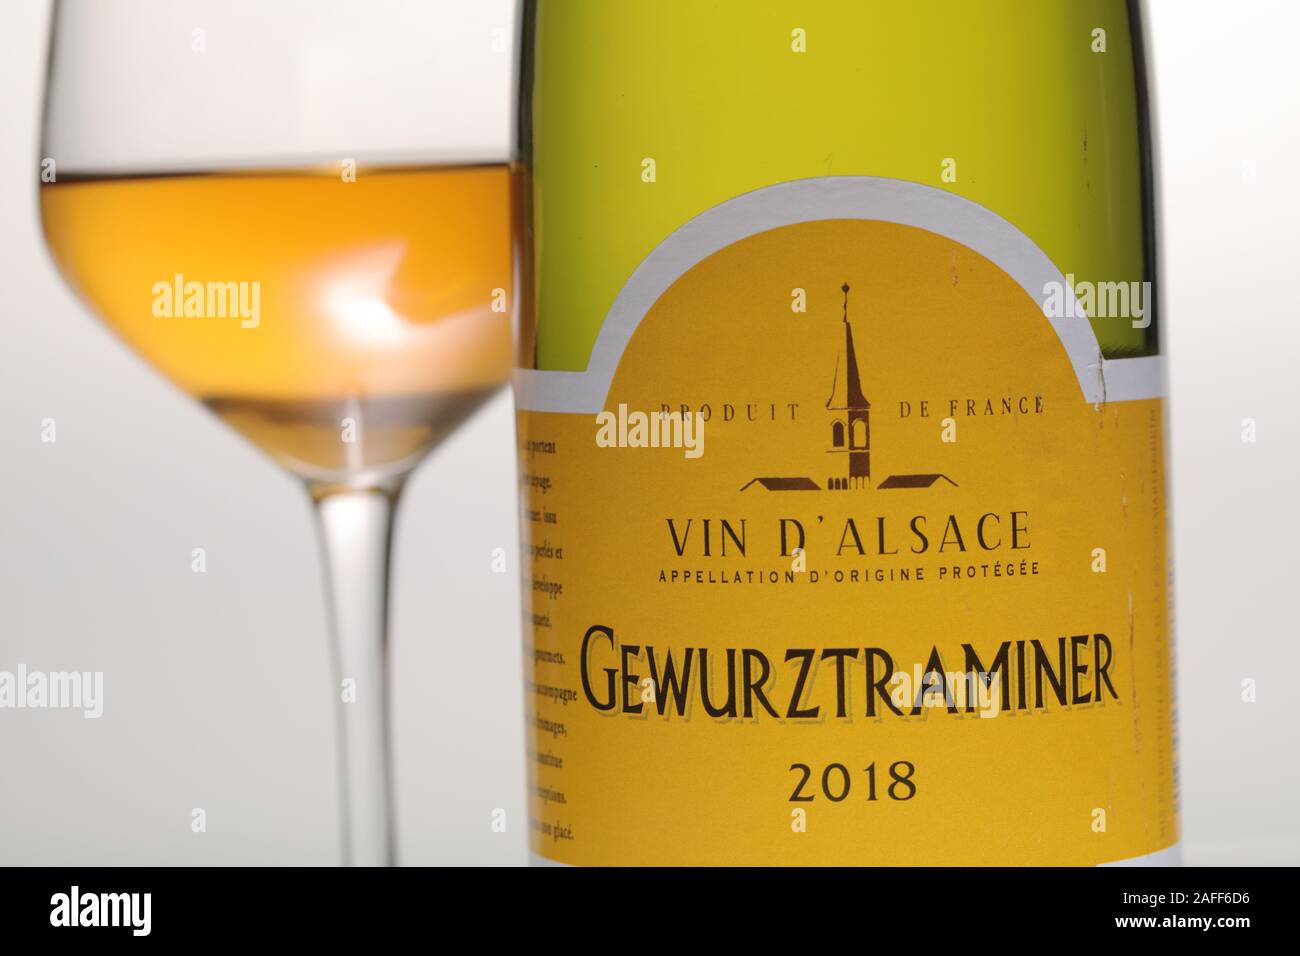 Saint-pétersbourg, Russie - 30 septembre 2019 : Bouteille et d'un verre de Gewurztraminer, le vin blanc doux de la région Alsace. Alsace provi Banque D'Images